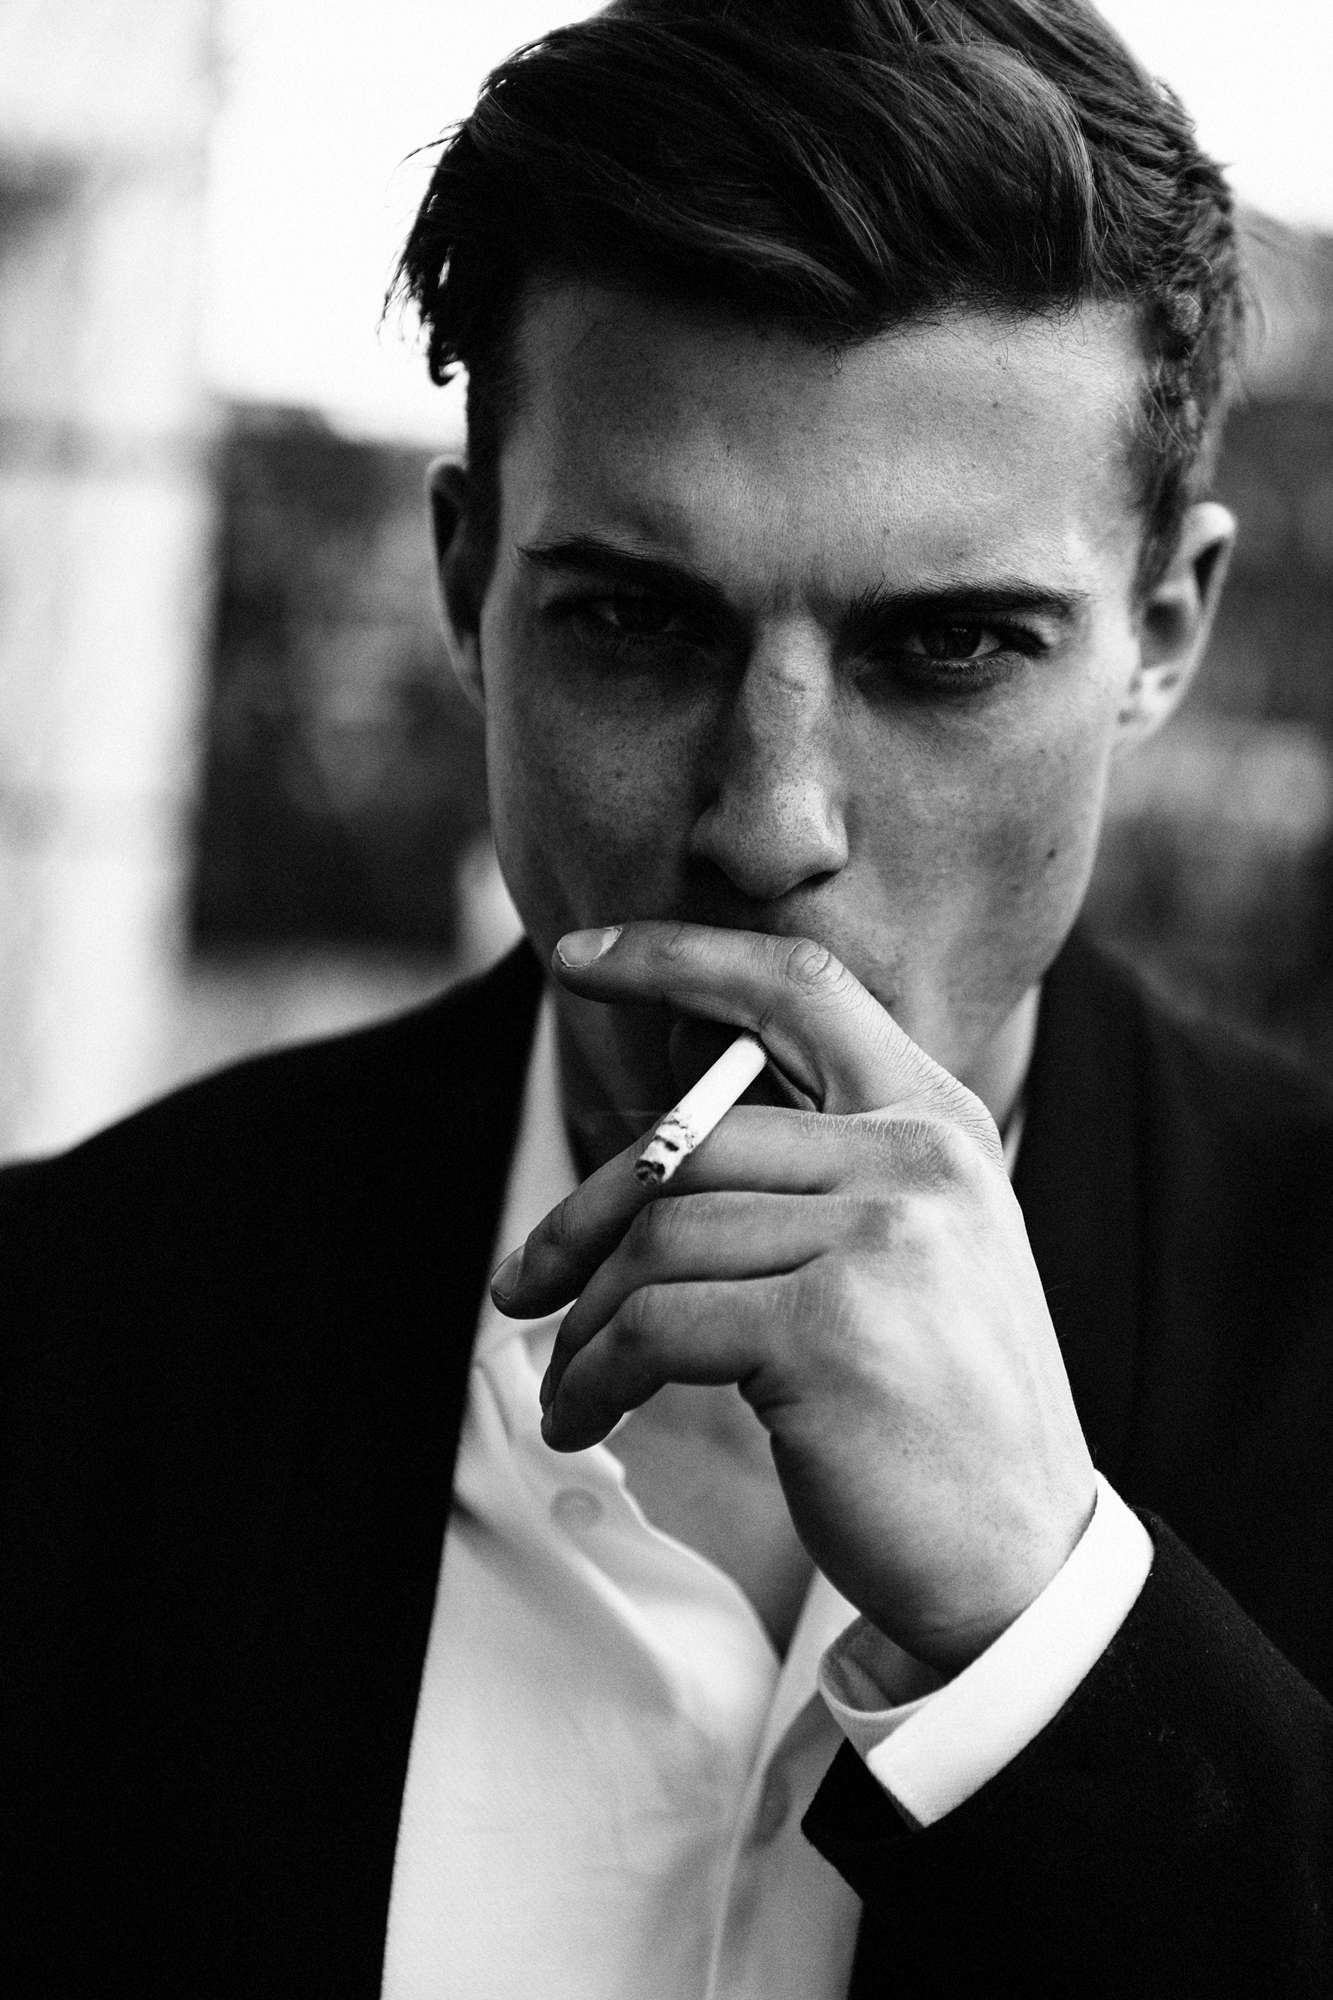 Фотограф Москва, стильная мужская фотосессия, портрет с сигаретой